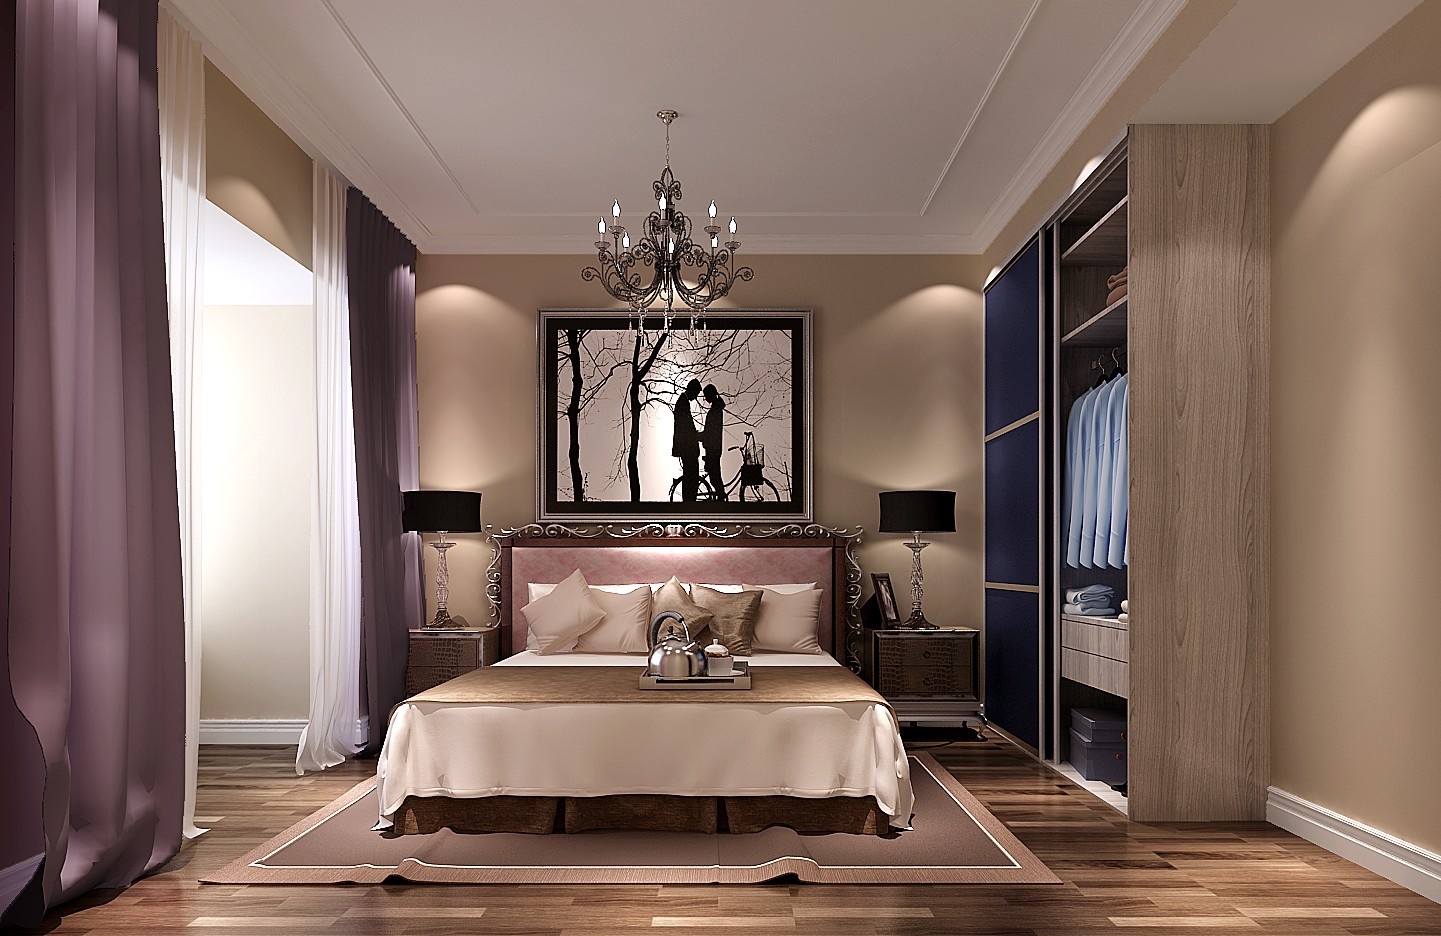 高度国际 润泽公馆 简欧 公寓 卧室图片来自高度国际在润泽公馆——公寓的分享